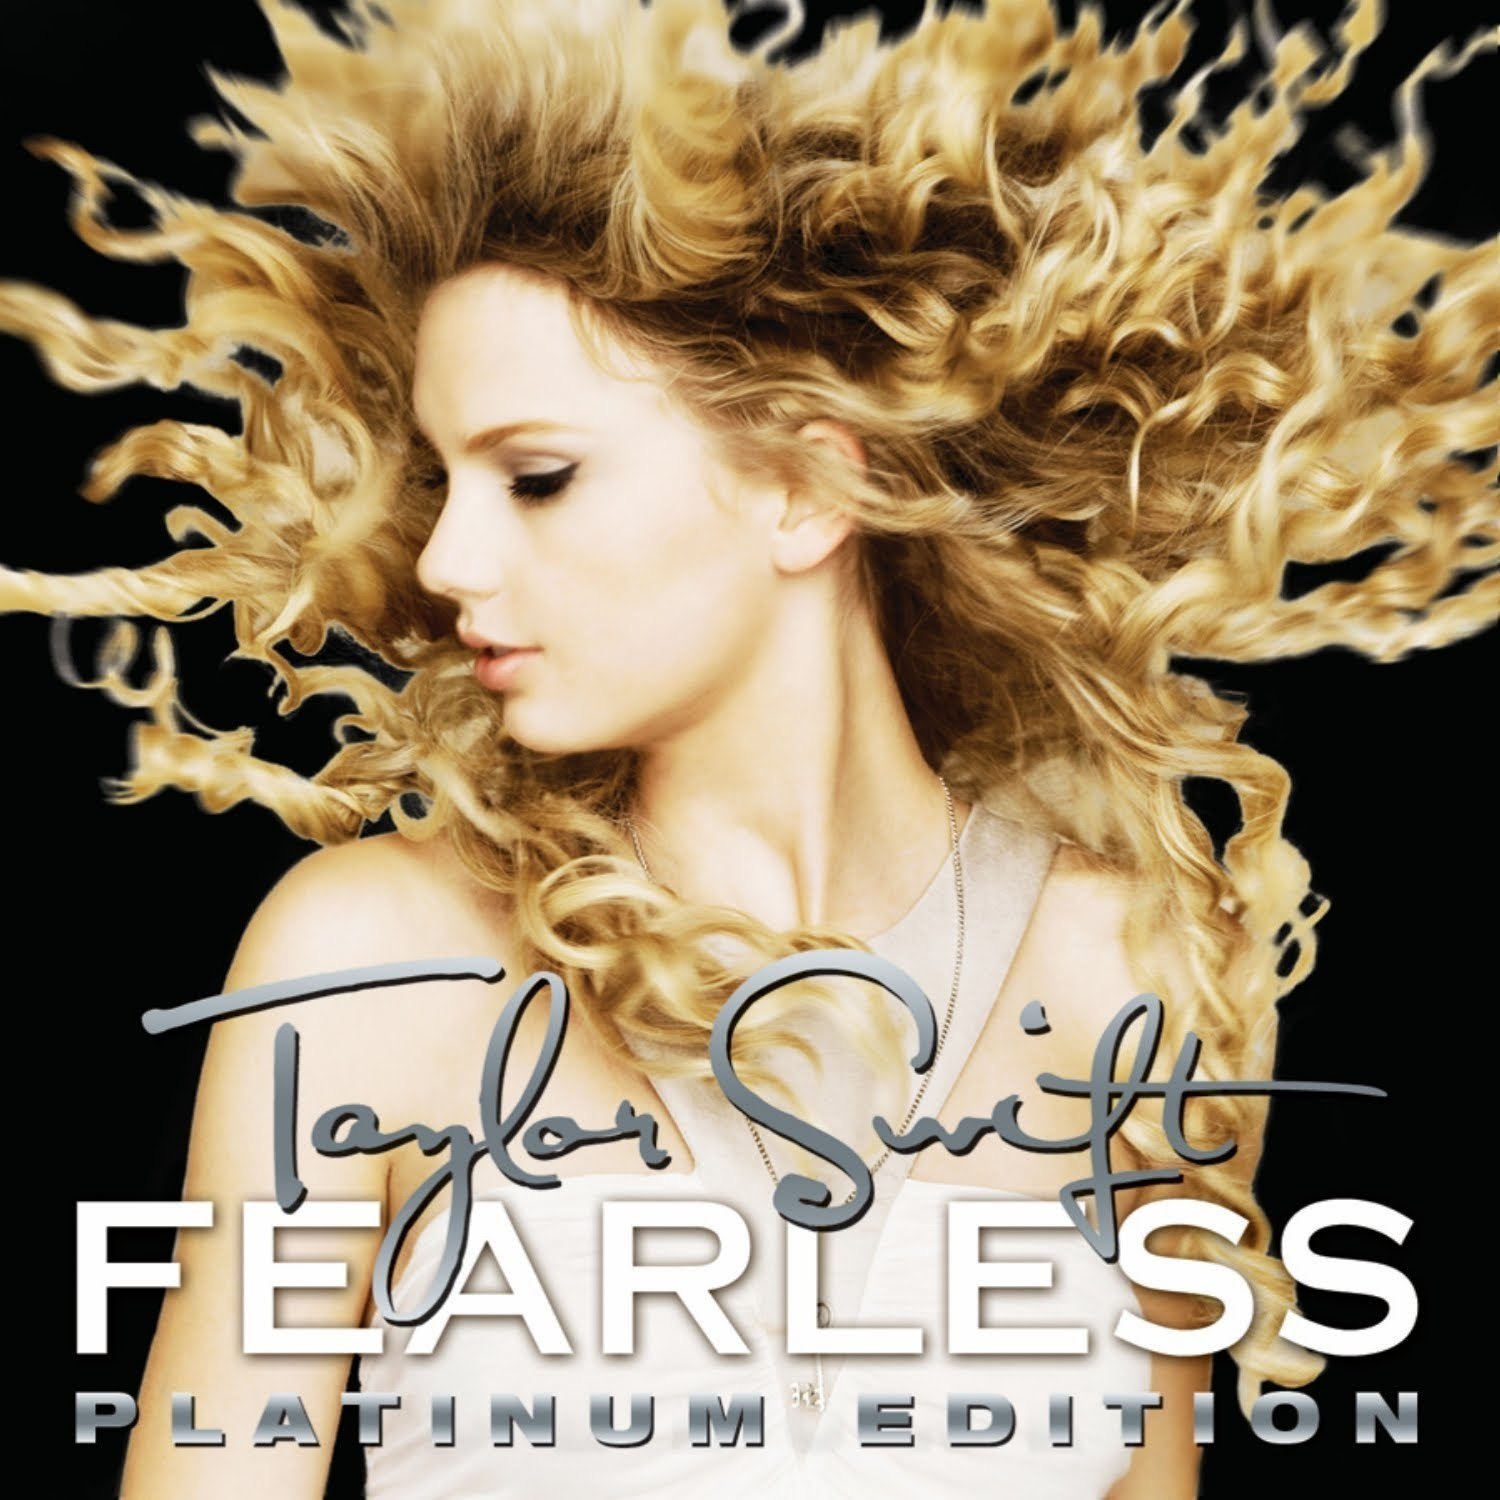 http://4.bp.blogspot.com/-DzXEwz9bs5E/UObWrAl1Z0I/AAAAAAAAA2M/I_6KsugEY0M/s1600/Fearless-Platinum-Edition-Official-Album-Cover-fearless-taylor-swift-album-14877441-1500-1500+(1).jpg